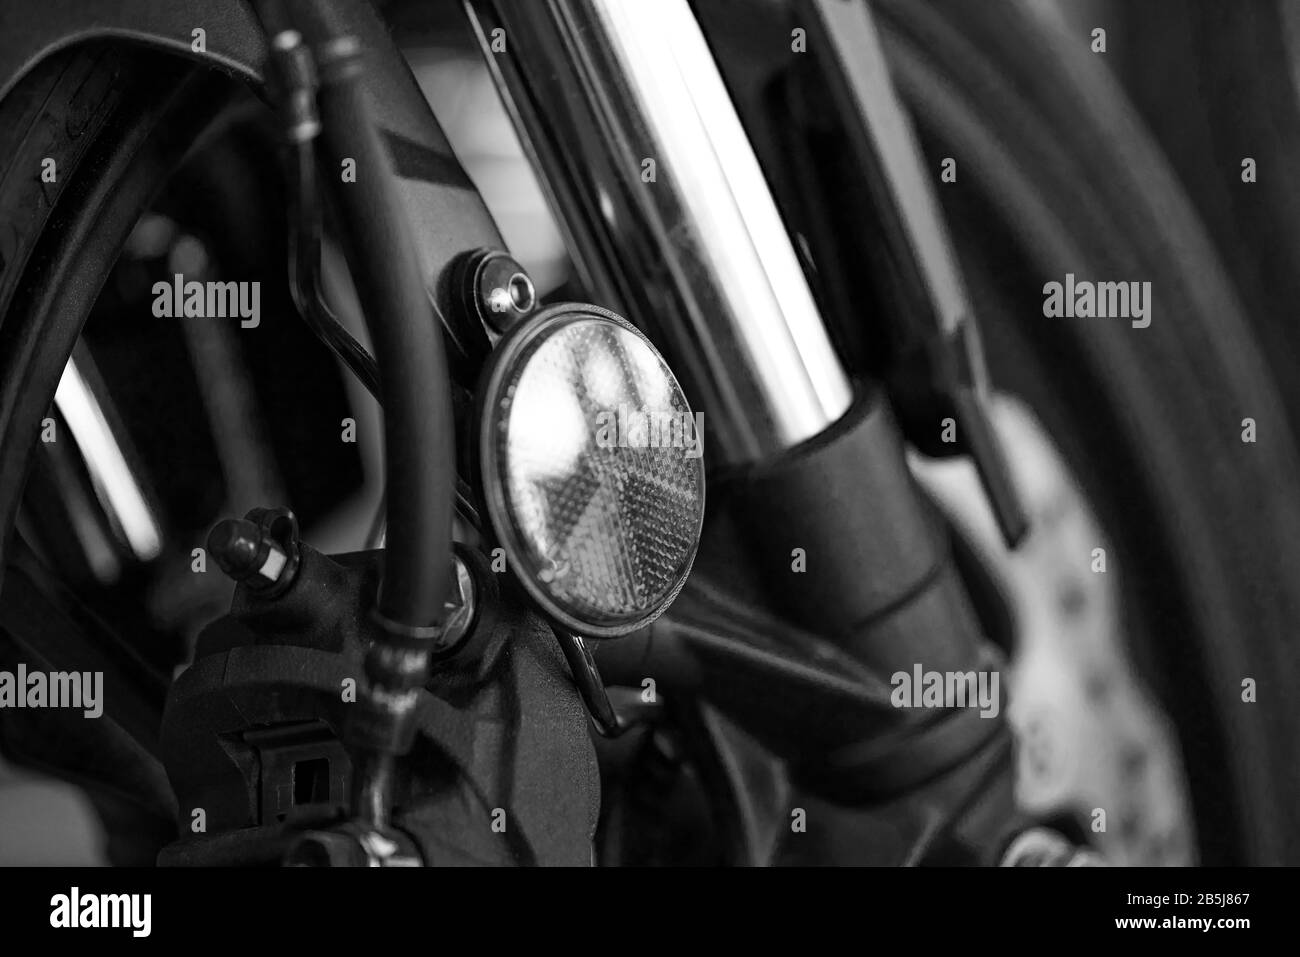 Primer plano de los frenos de la motocicleta y de la rueda delantera. Blanco y negro. Foto de stock